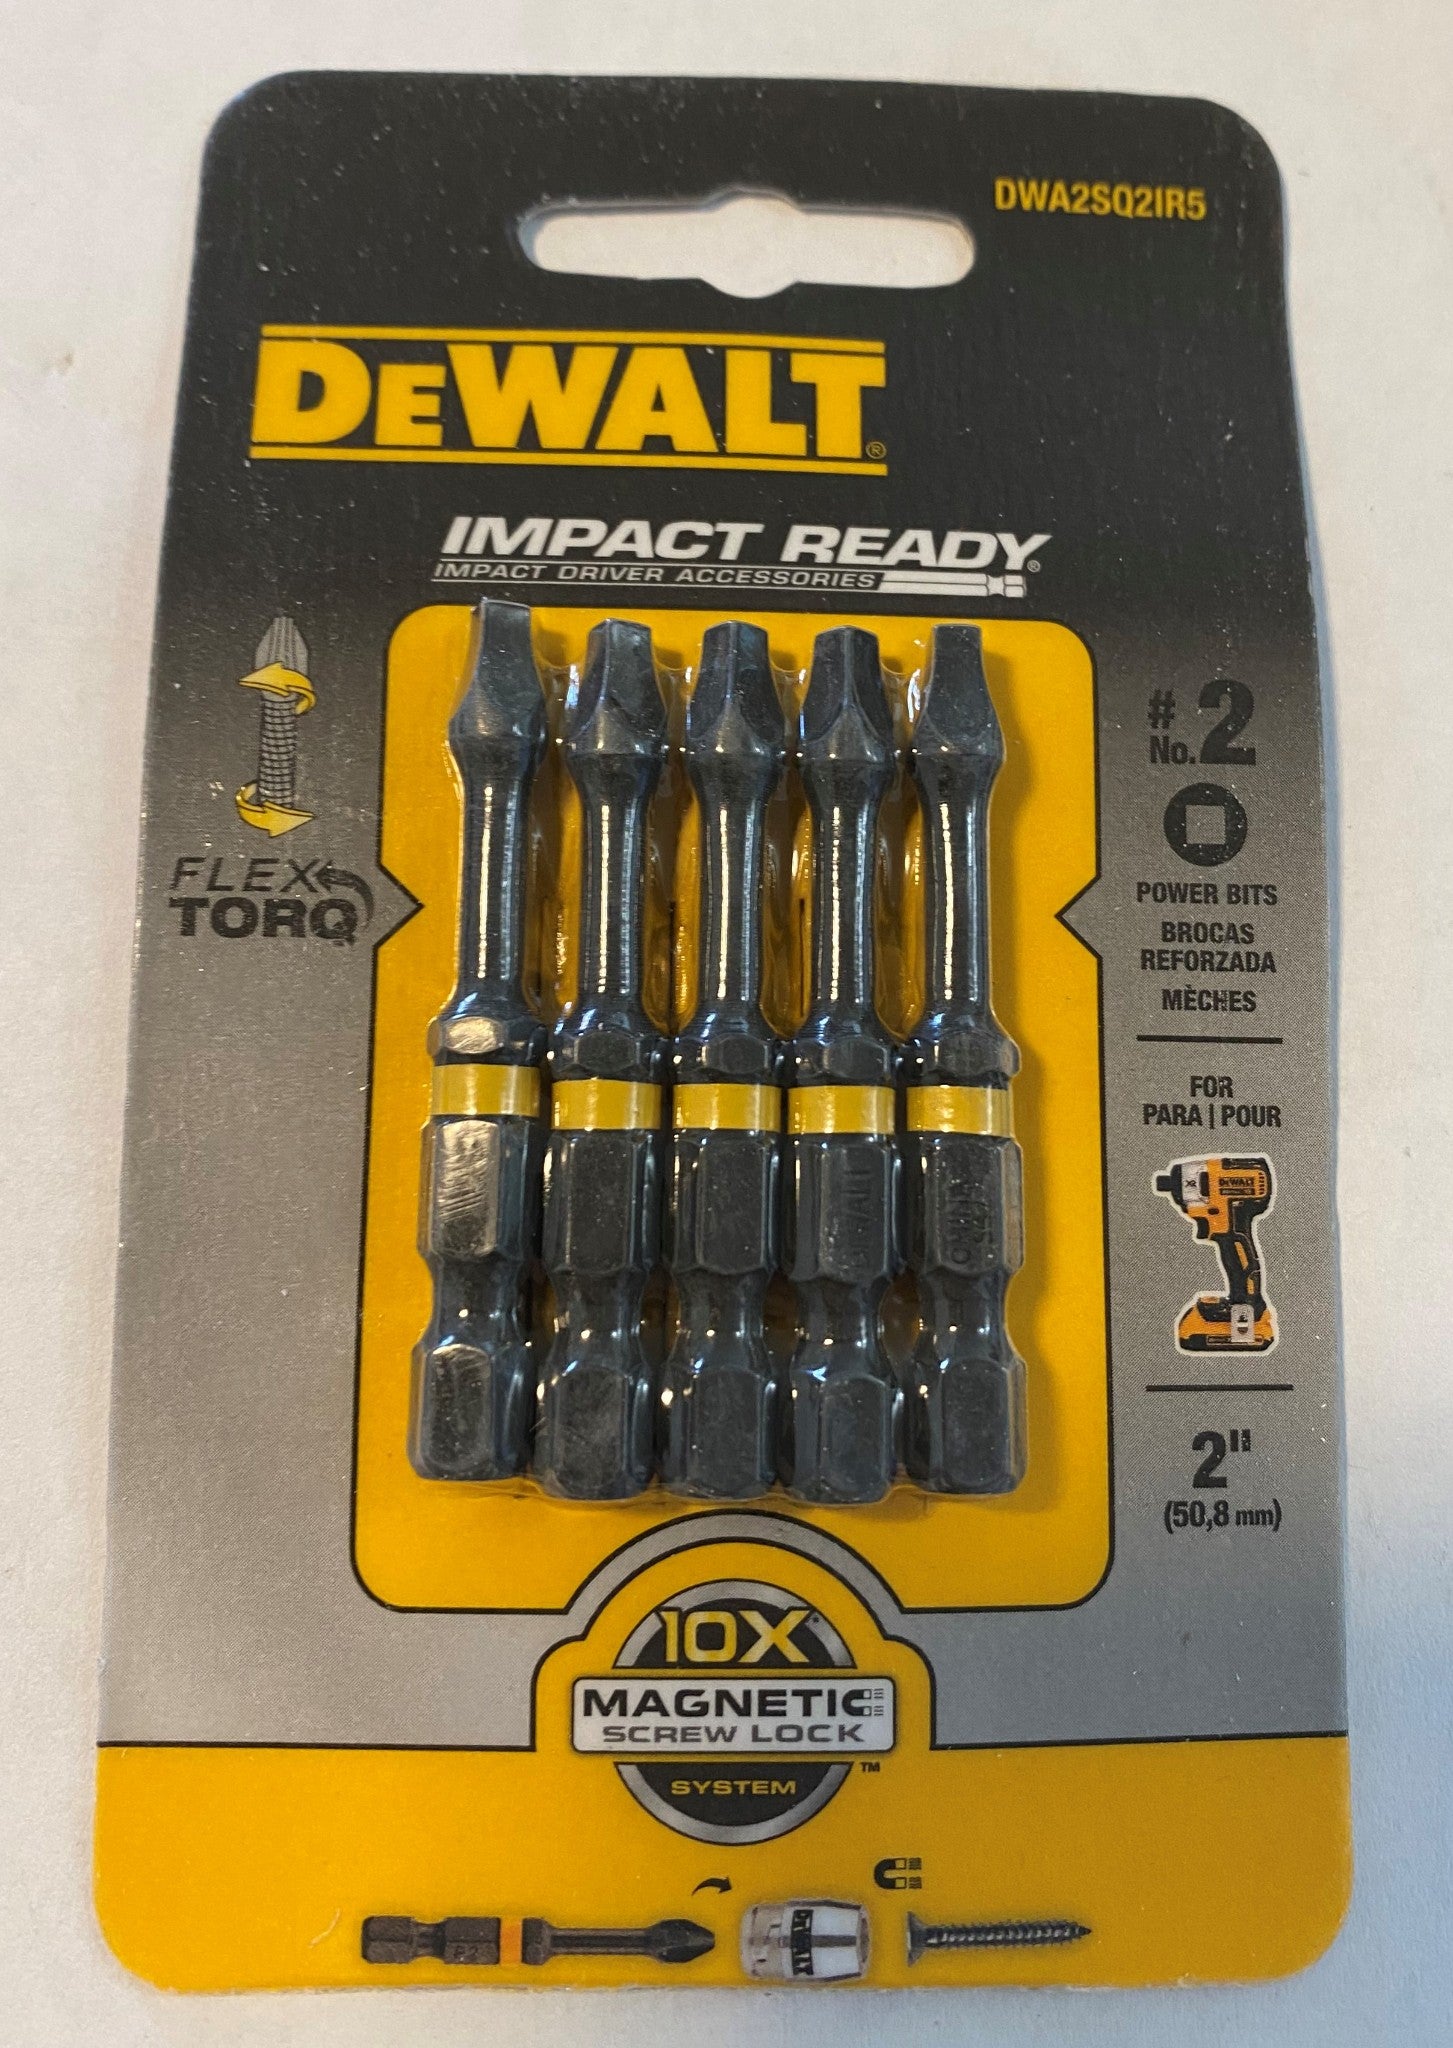 Dewalt DWA2SQ2IR5 #2 Square x 2" Impact Ready Insert Screw Bits Pack of 5